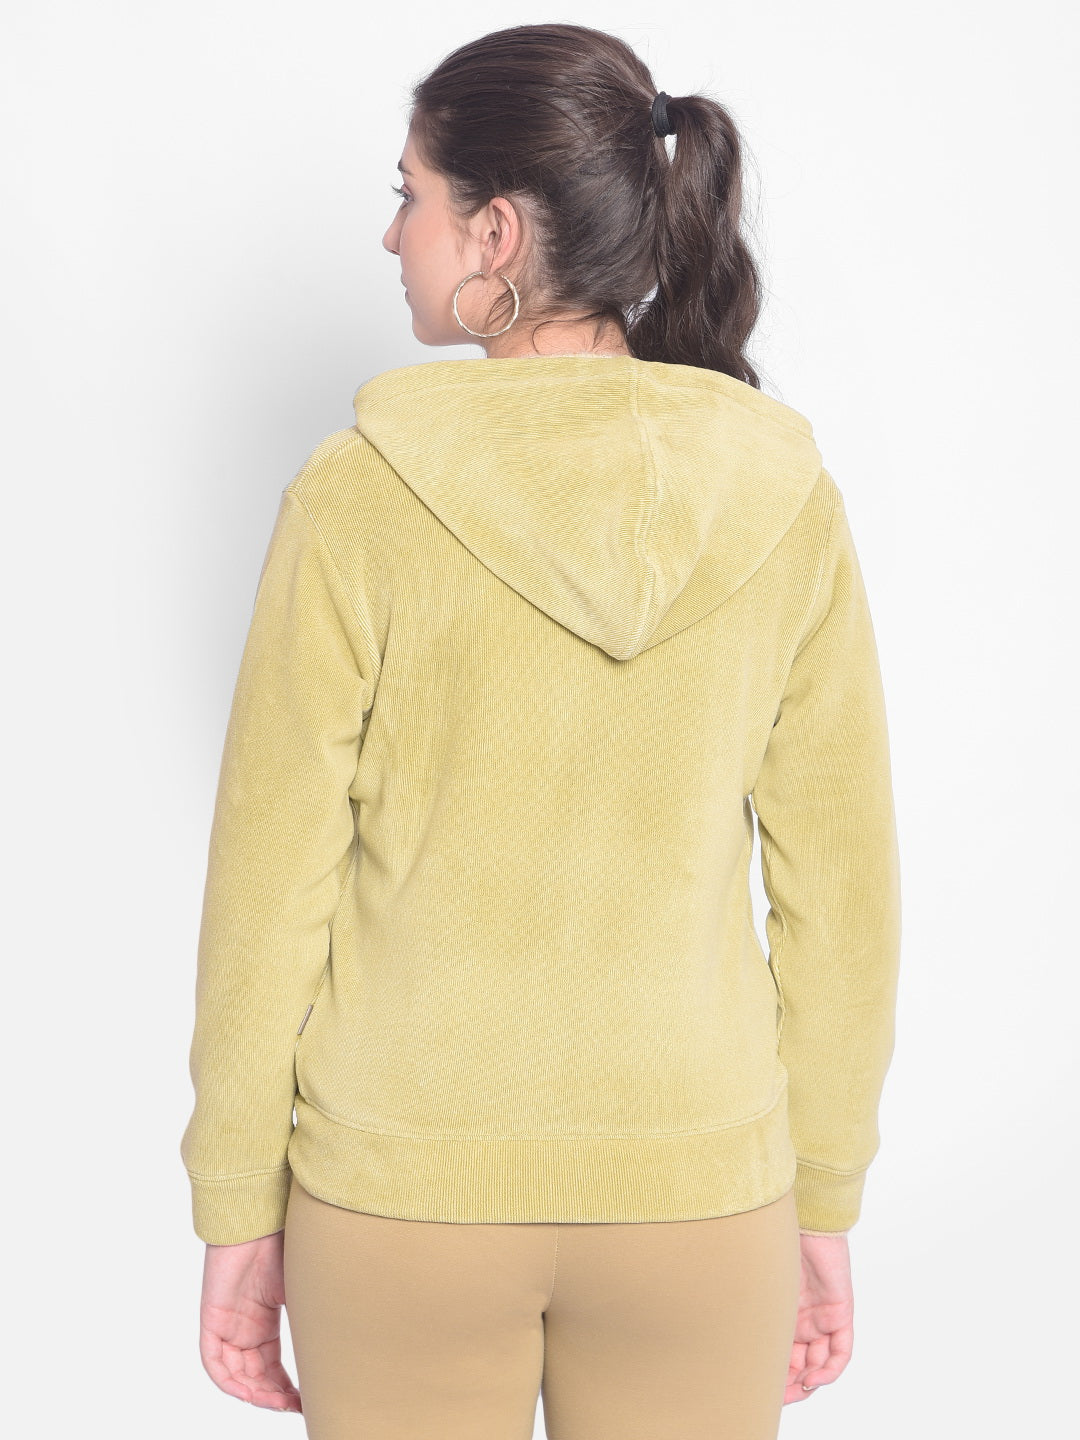 Olive Hooded Sweatshirt-Women Sweatshirts-Crimsoune Club